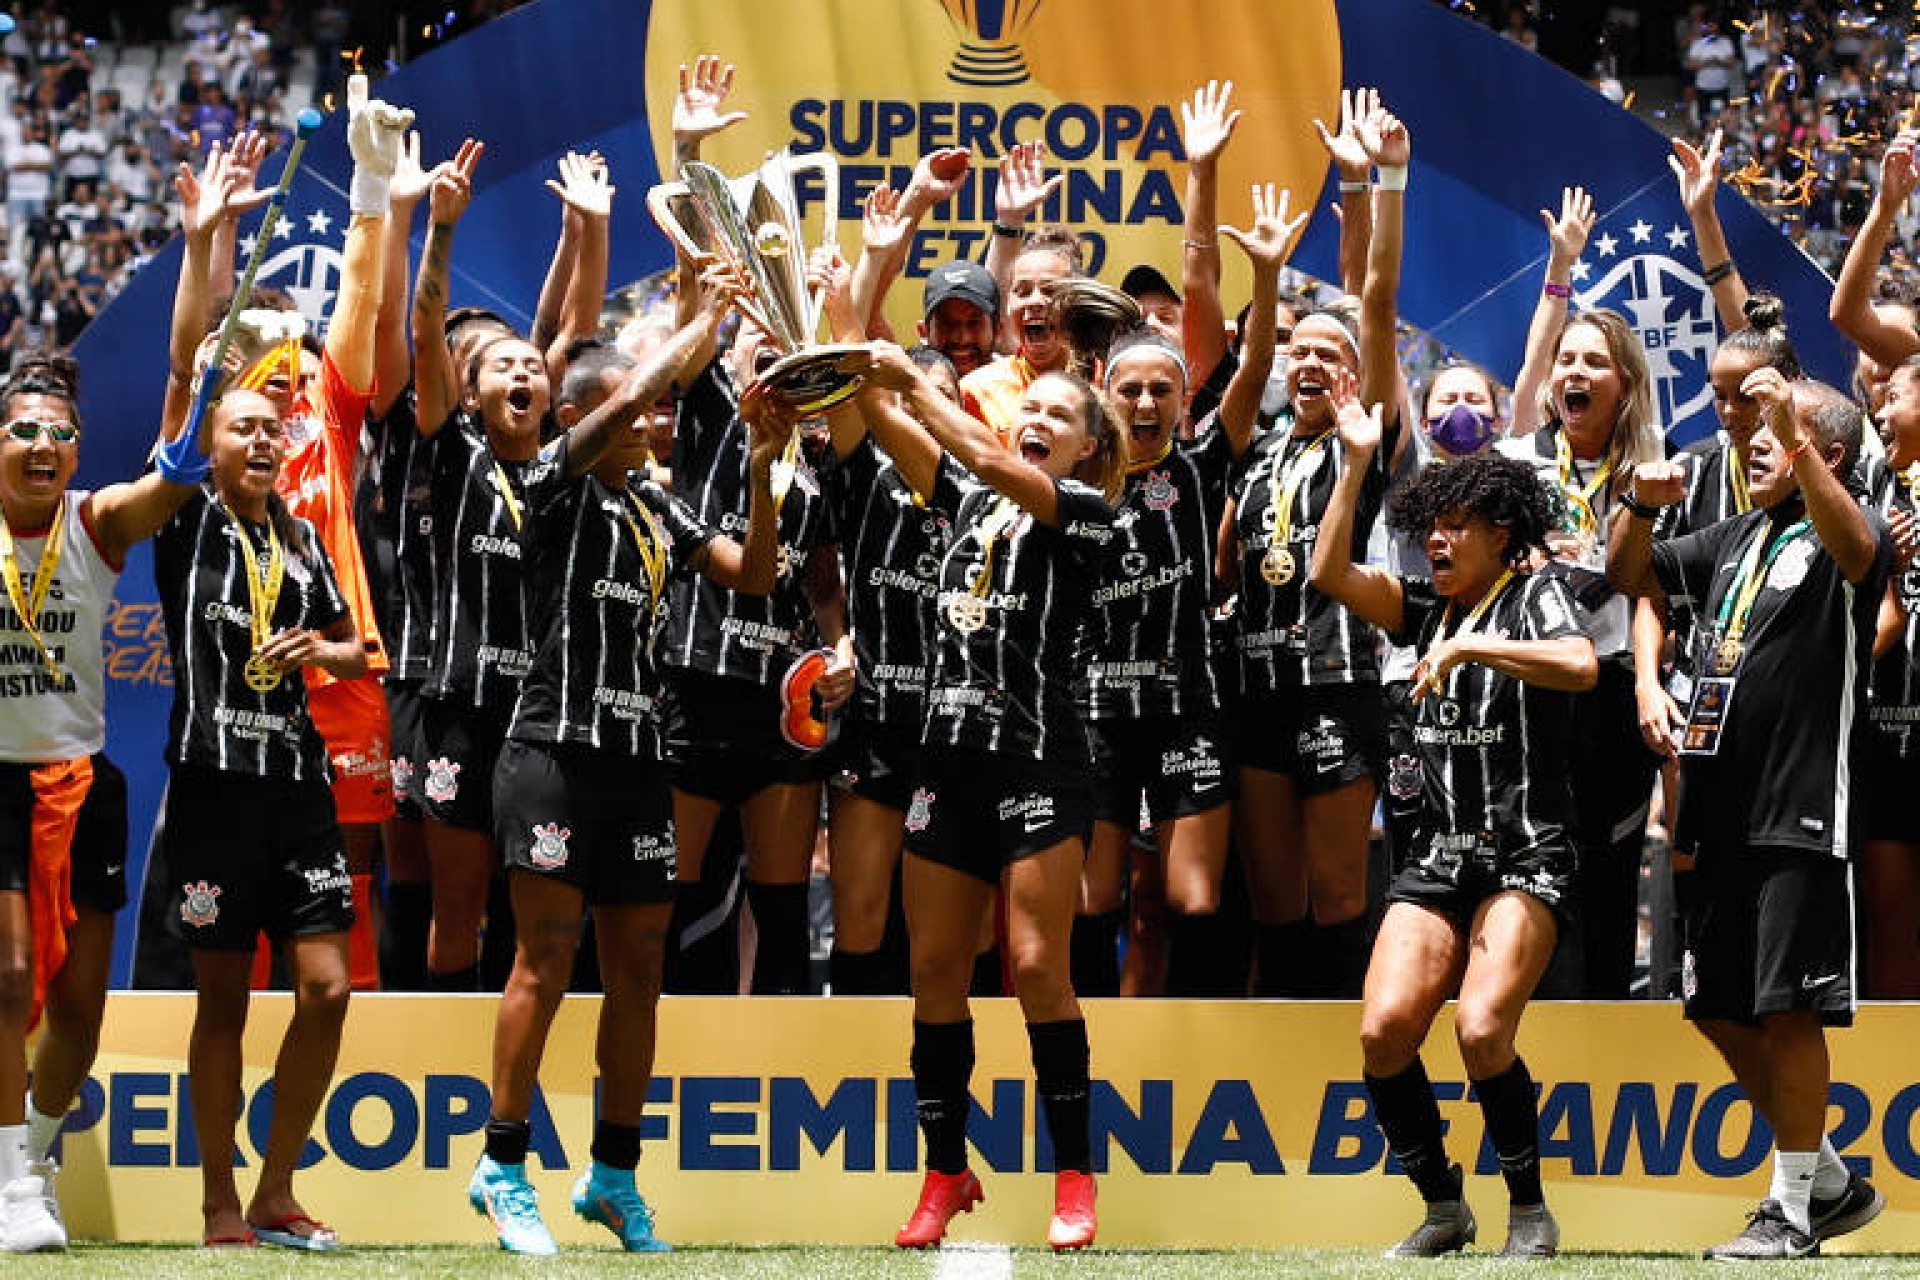 Corinthians venceu a Supercopa do Brasil Feminina com gols nos acréscimos diante do Grêmio.  (Foto: Rodrigo Gazzanel/Agência Corinthians)